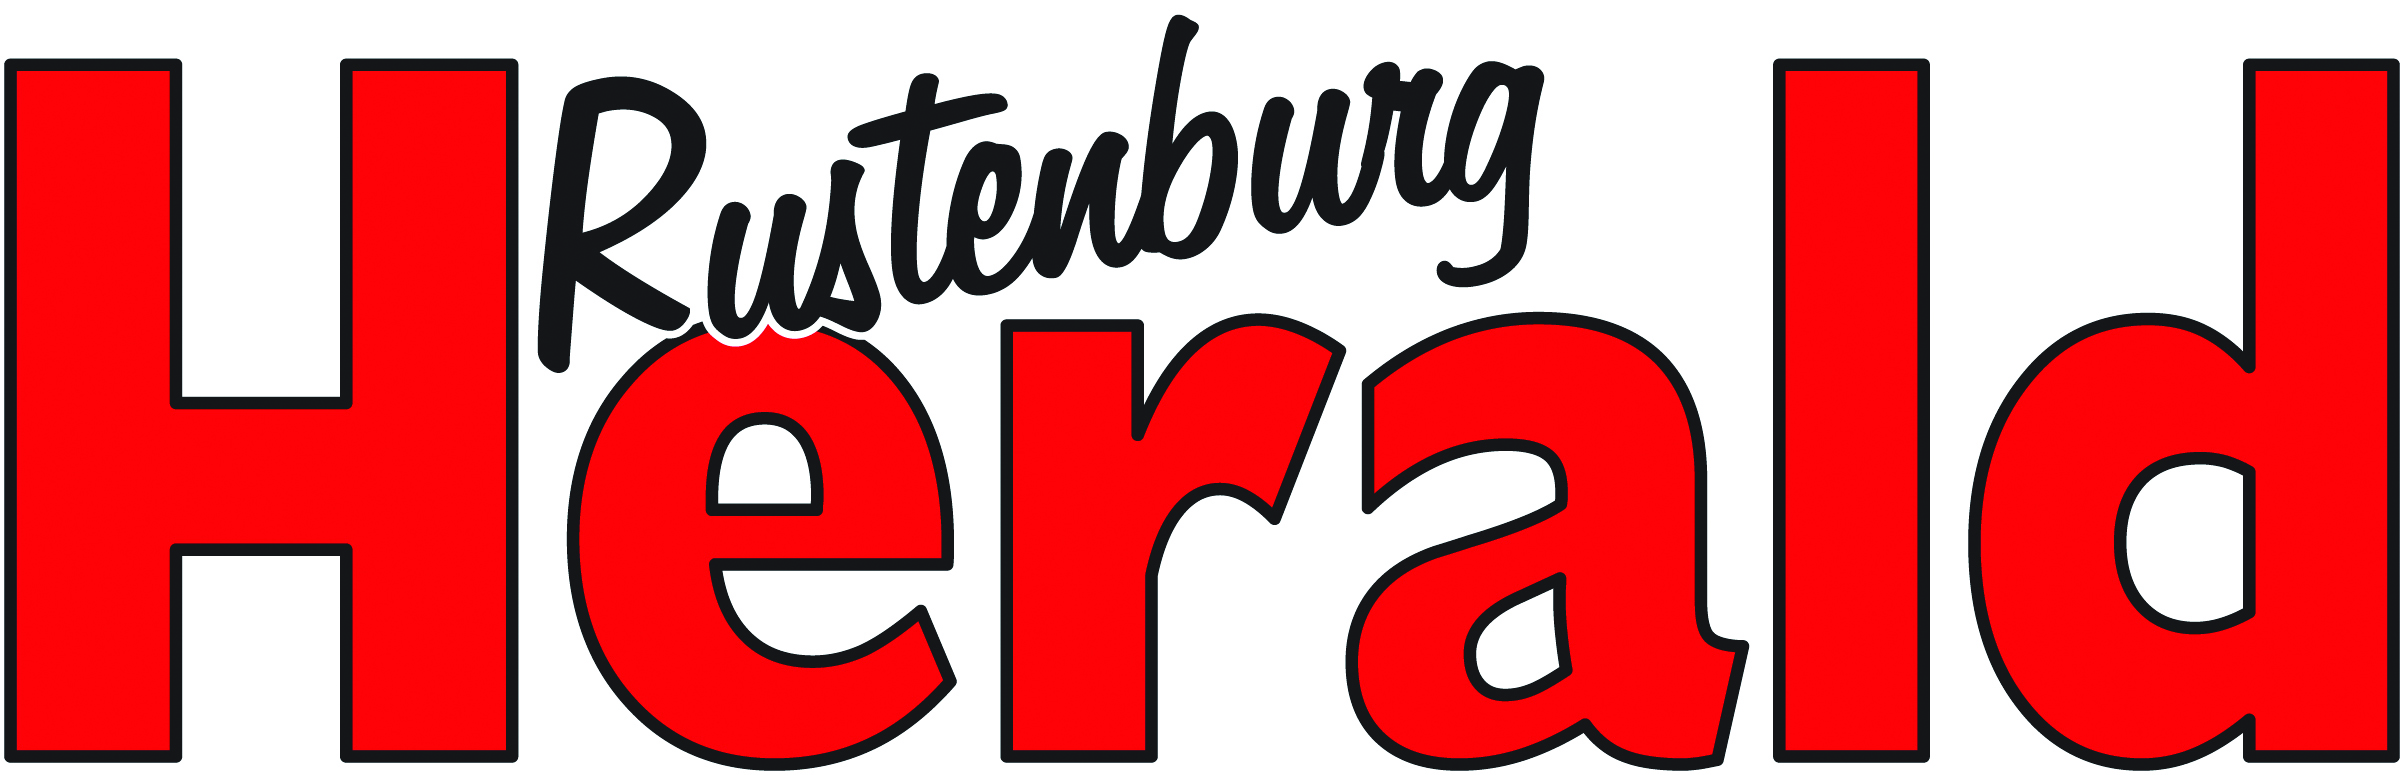 Rustenburg Herald Bonus